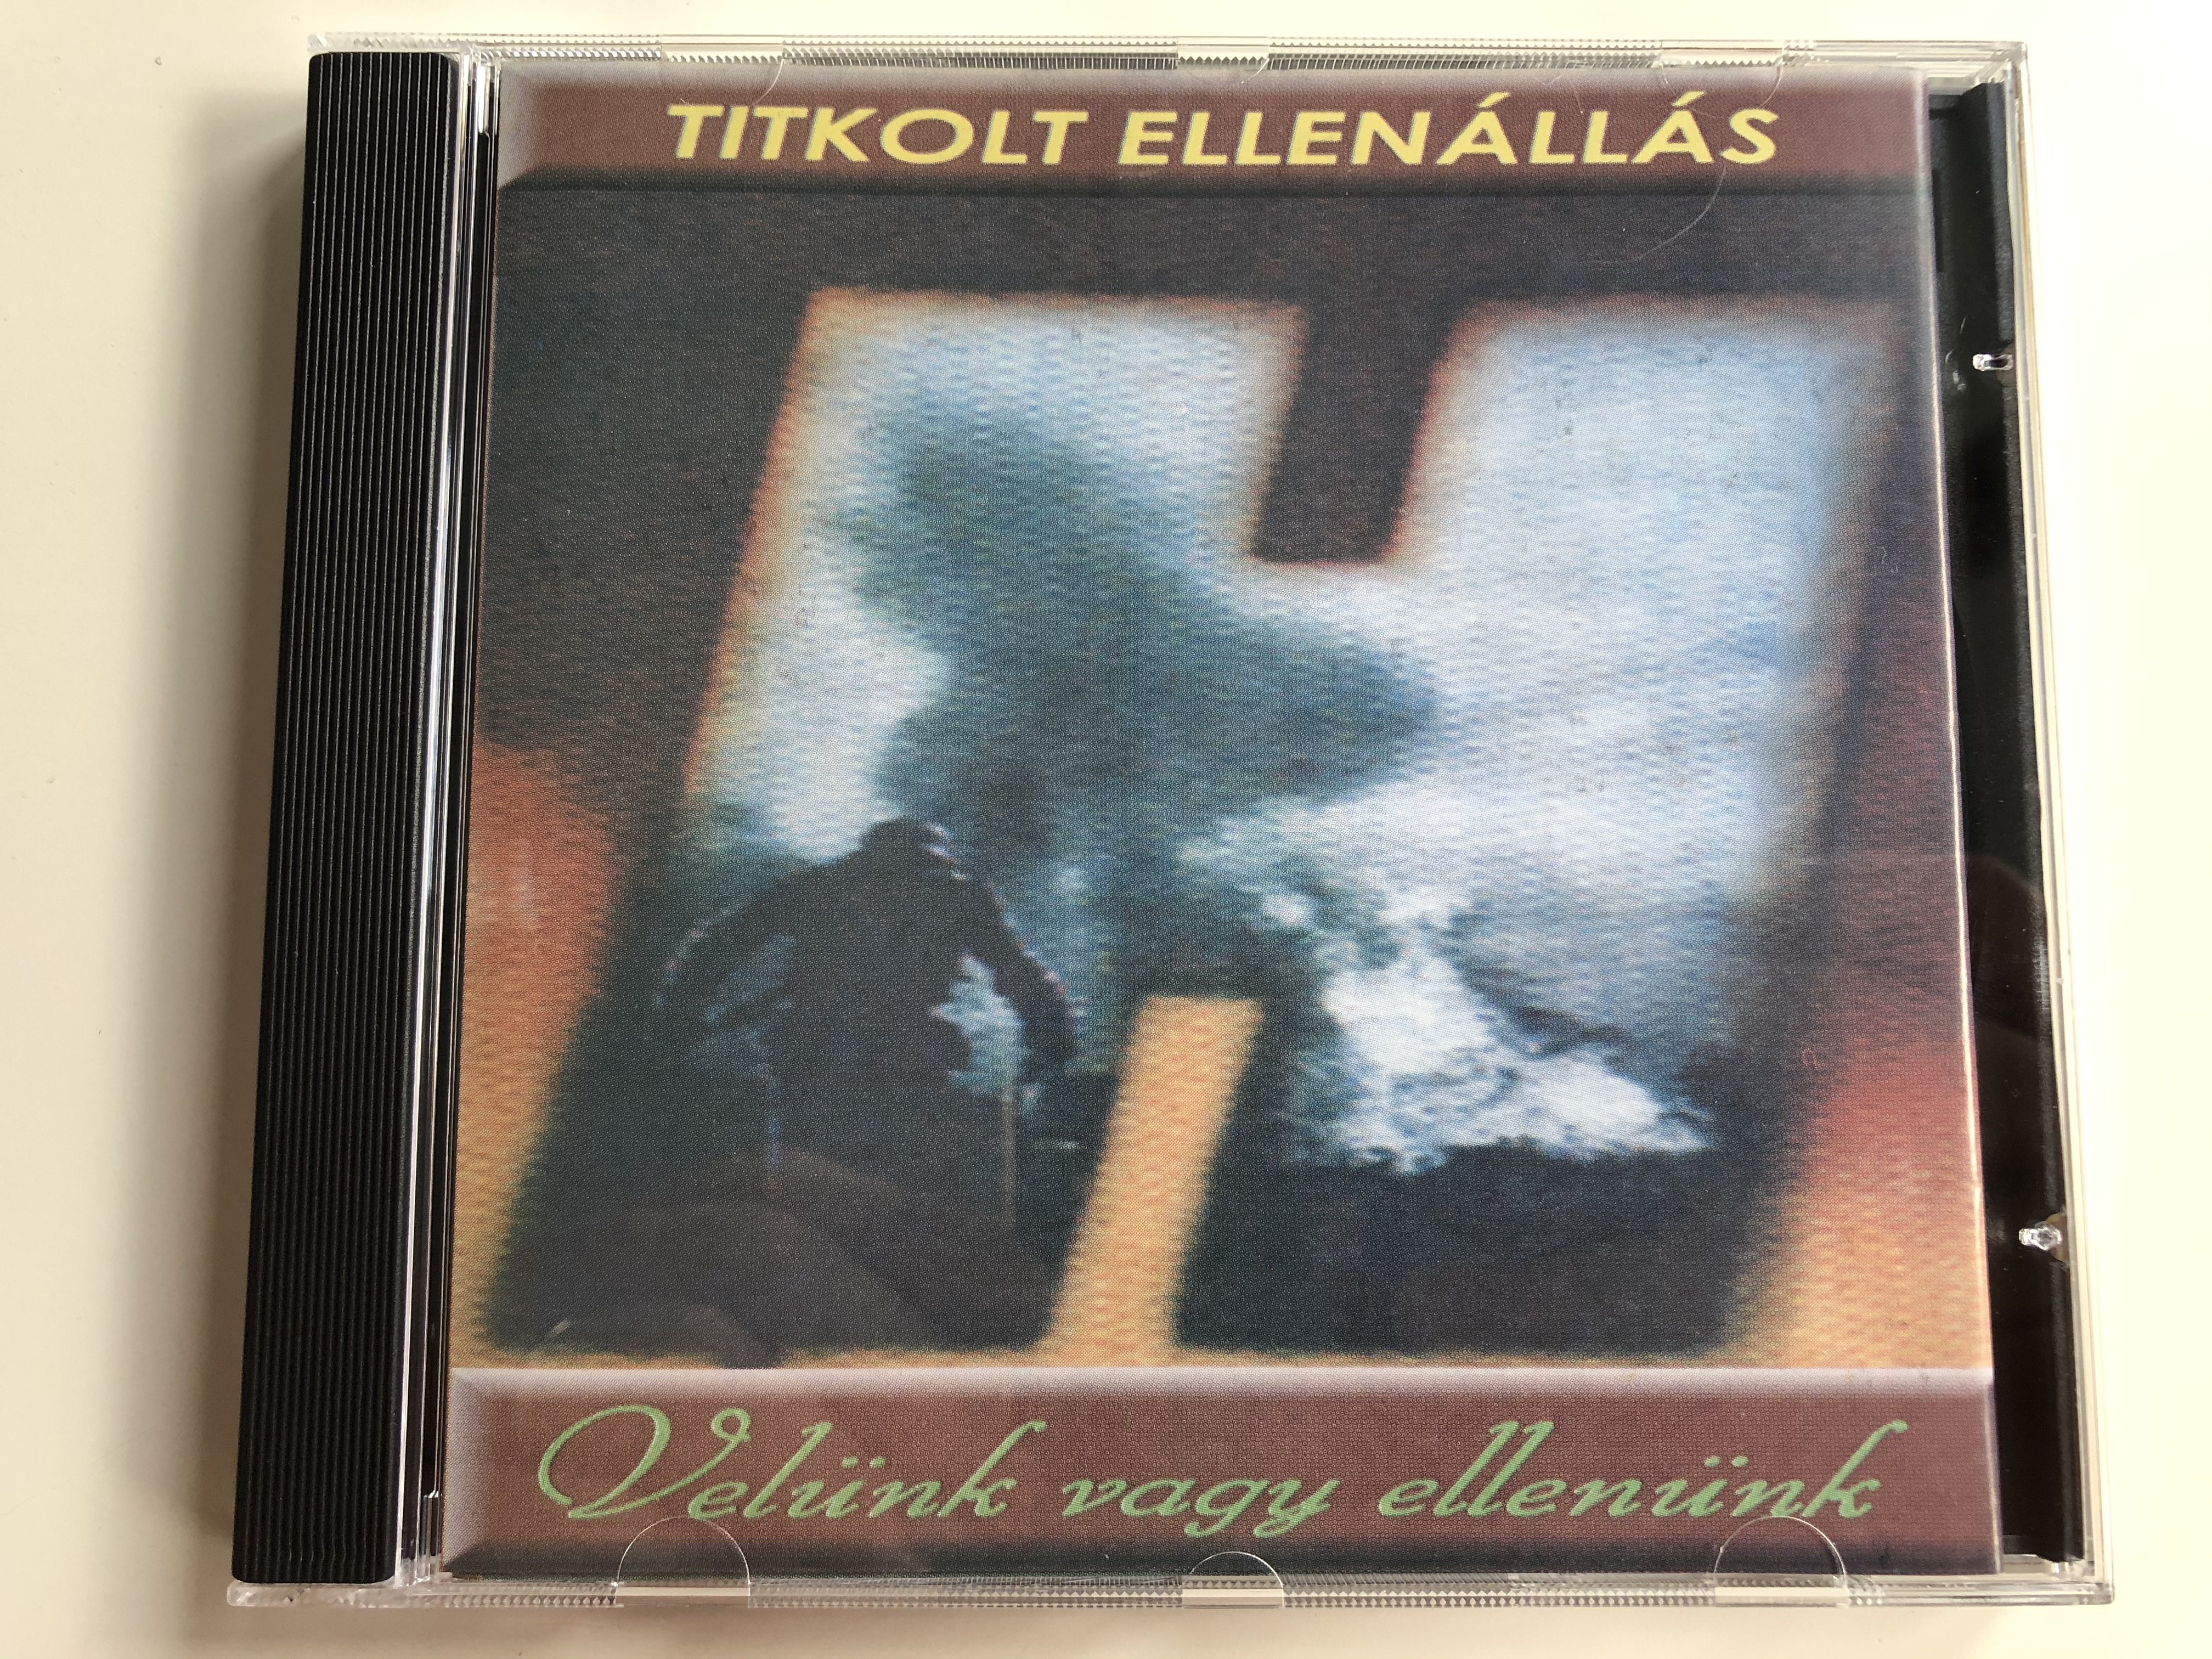 titkolt-ellen-ll-s-vel-nk-vagy-ellen-nk-rockworld-audio-cd-2001-te-003-1-.jpg